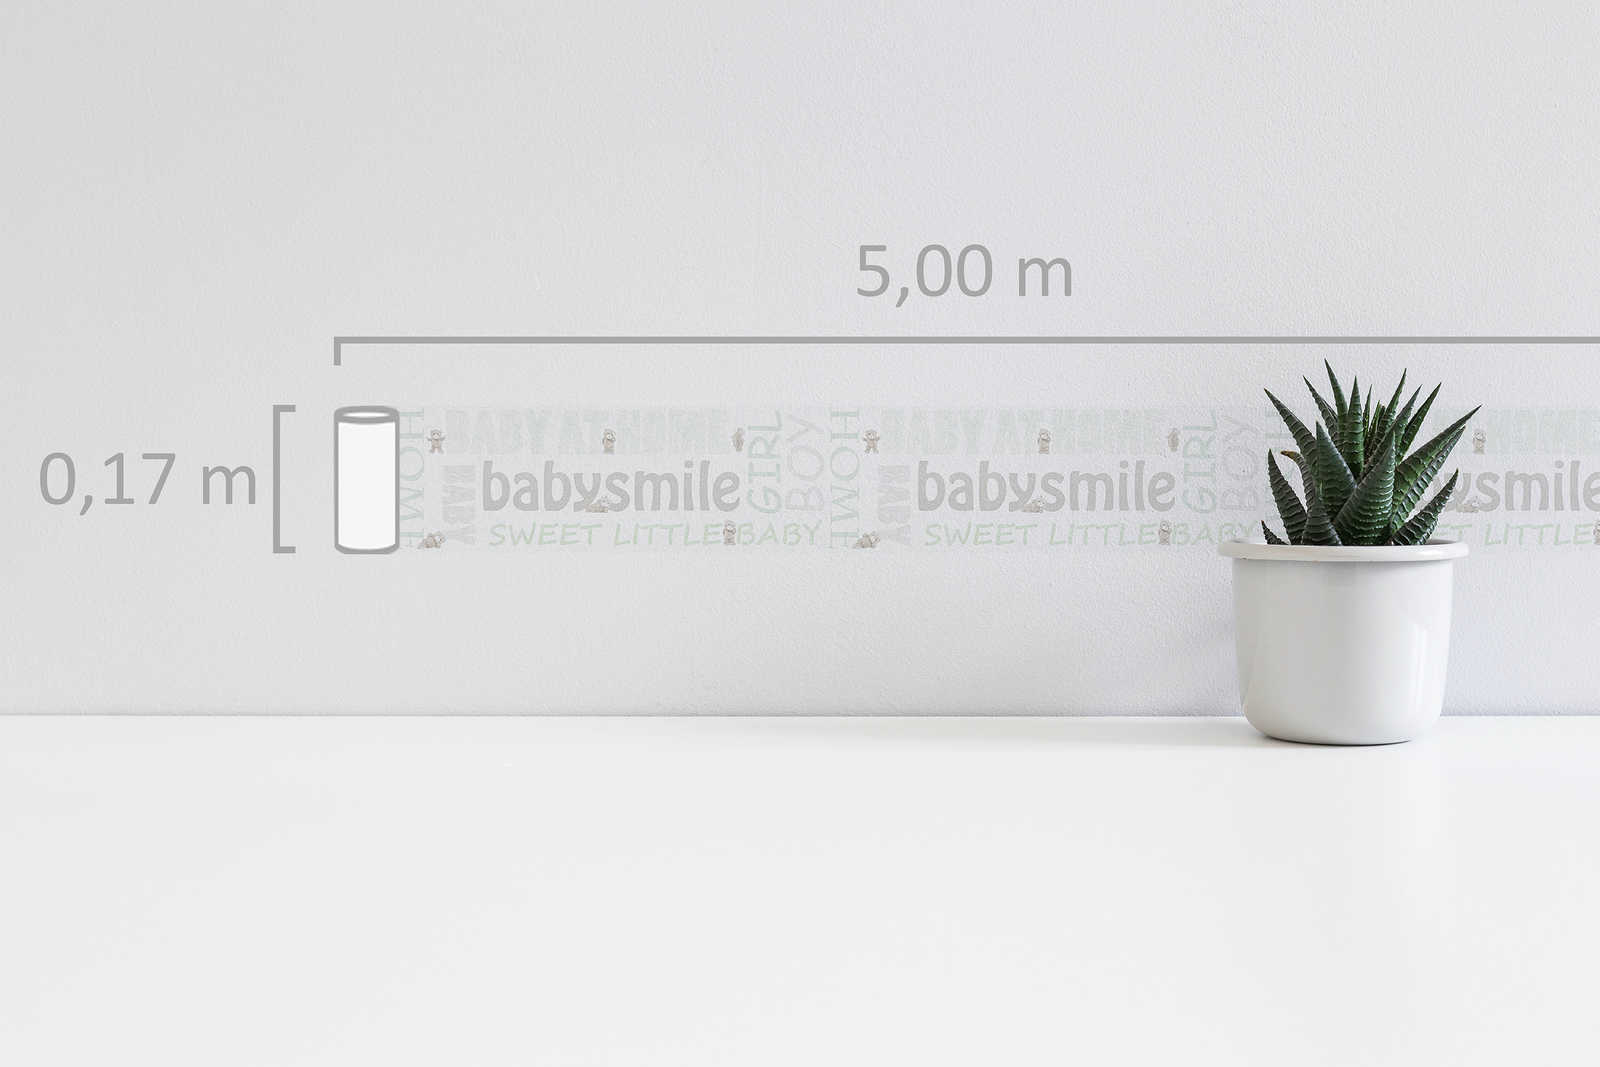             Bordure de papier peint motif bébé pour chambre d'enfant - métallique, blanc
        